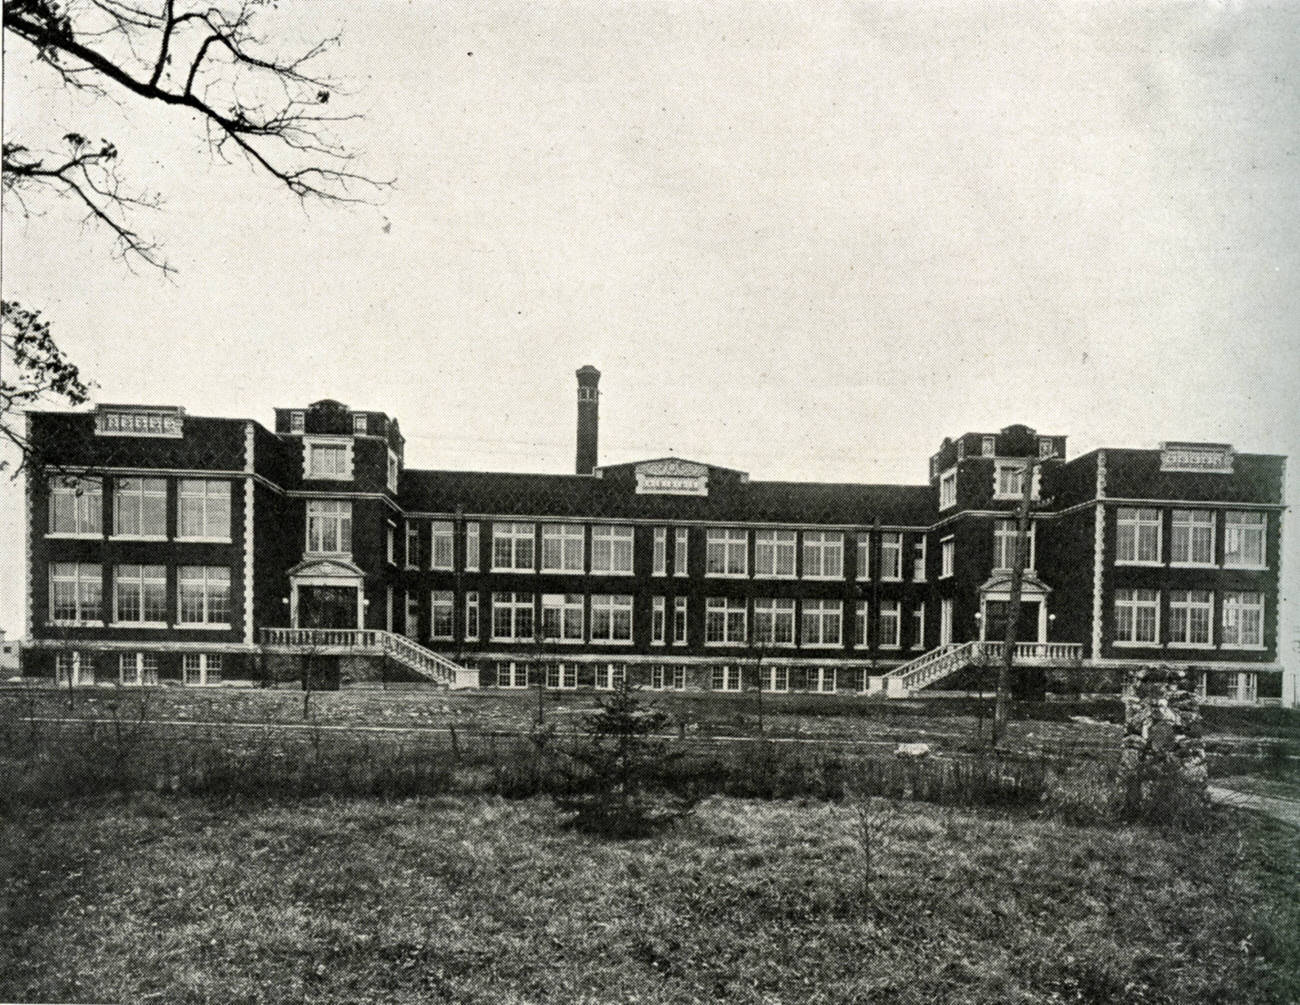 Crestview Elementary School, built in 1915